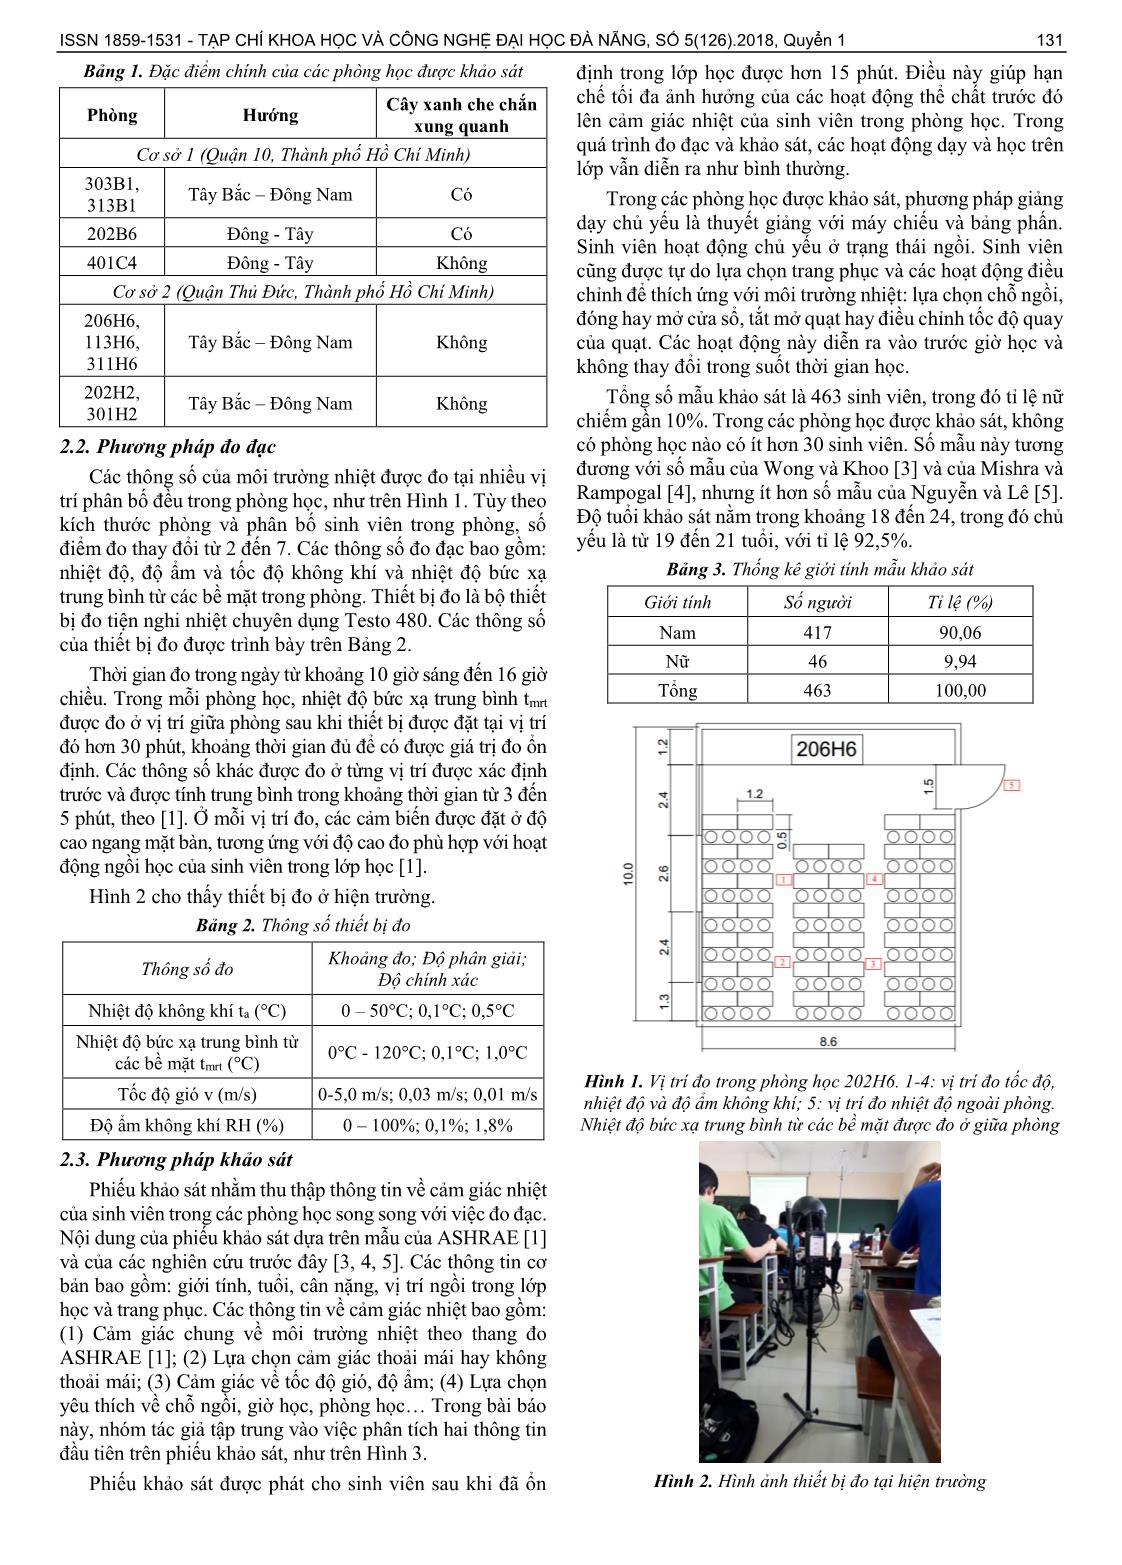 Mức tiện nghi nhiệt trong các phòng học thông gió tự nhiên ở trường Đại học Bách Khoa – đại học quốc gia thành phố Hồ Chí Minh trang 2